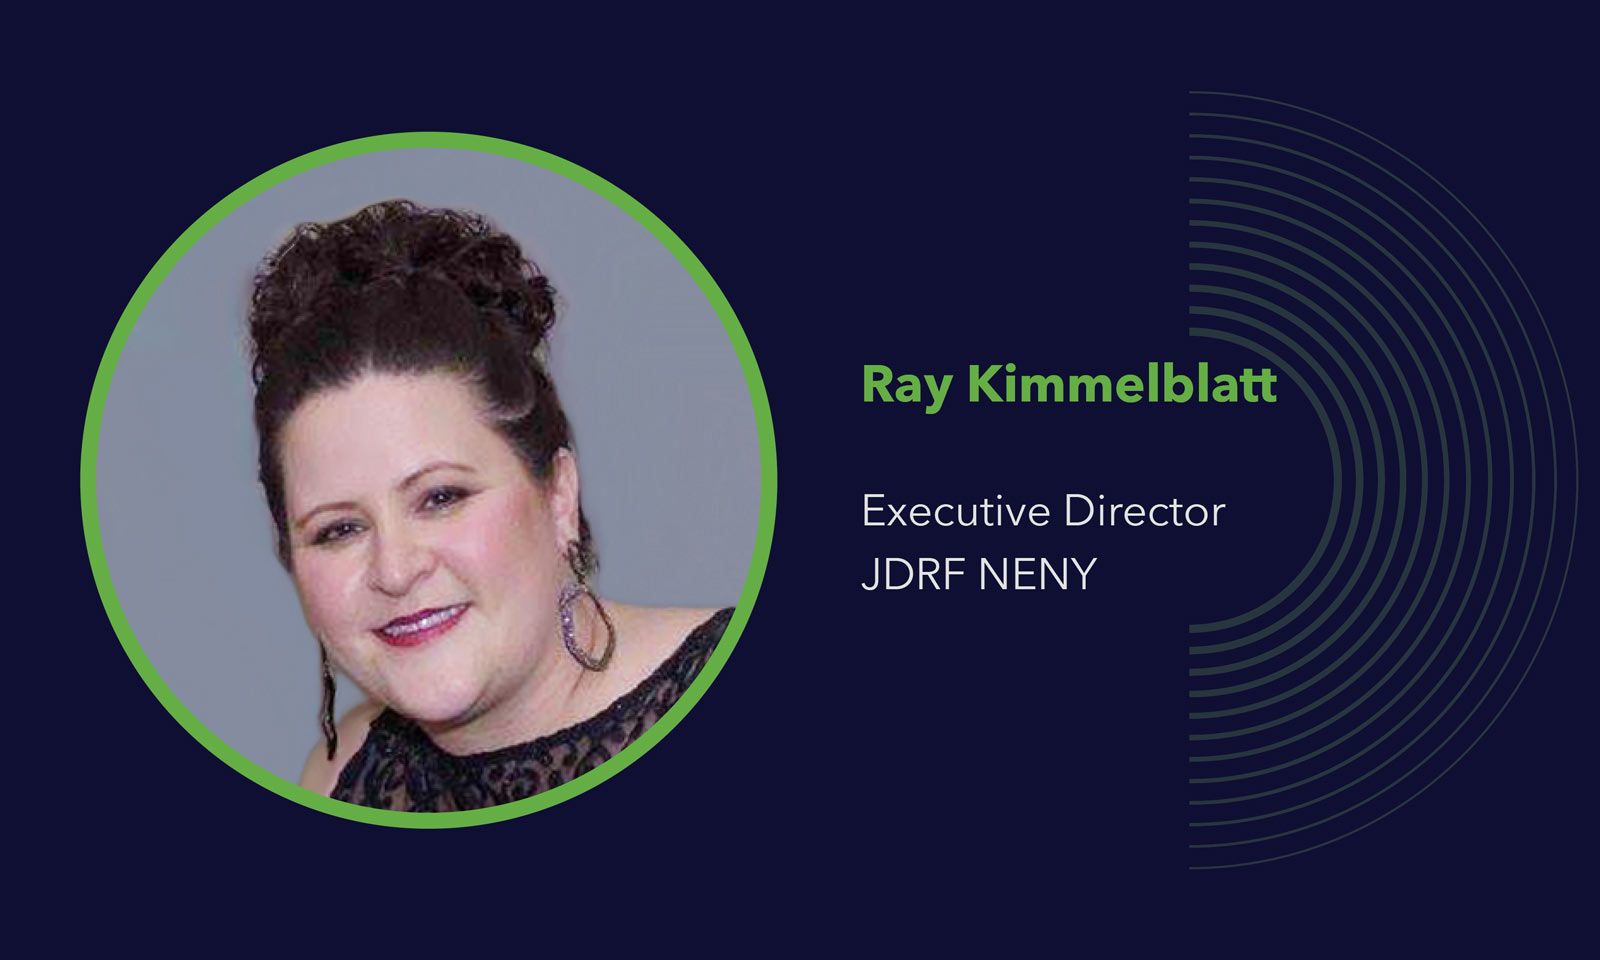 Ray Kimmelblatt, Executive Director of JDRF NENY